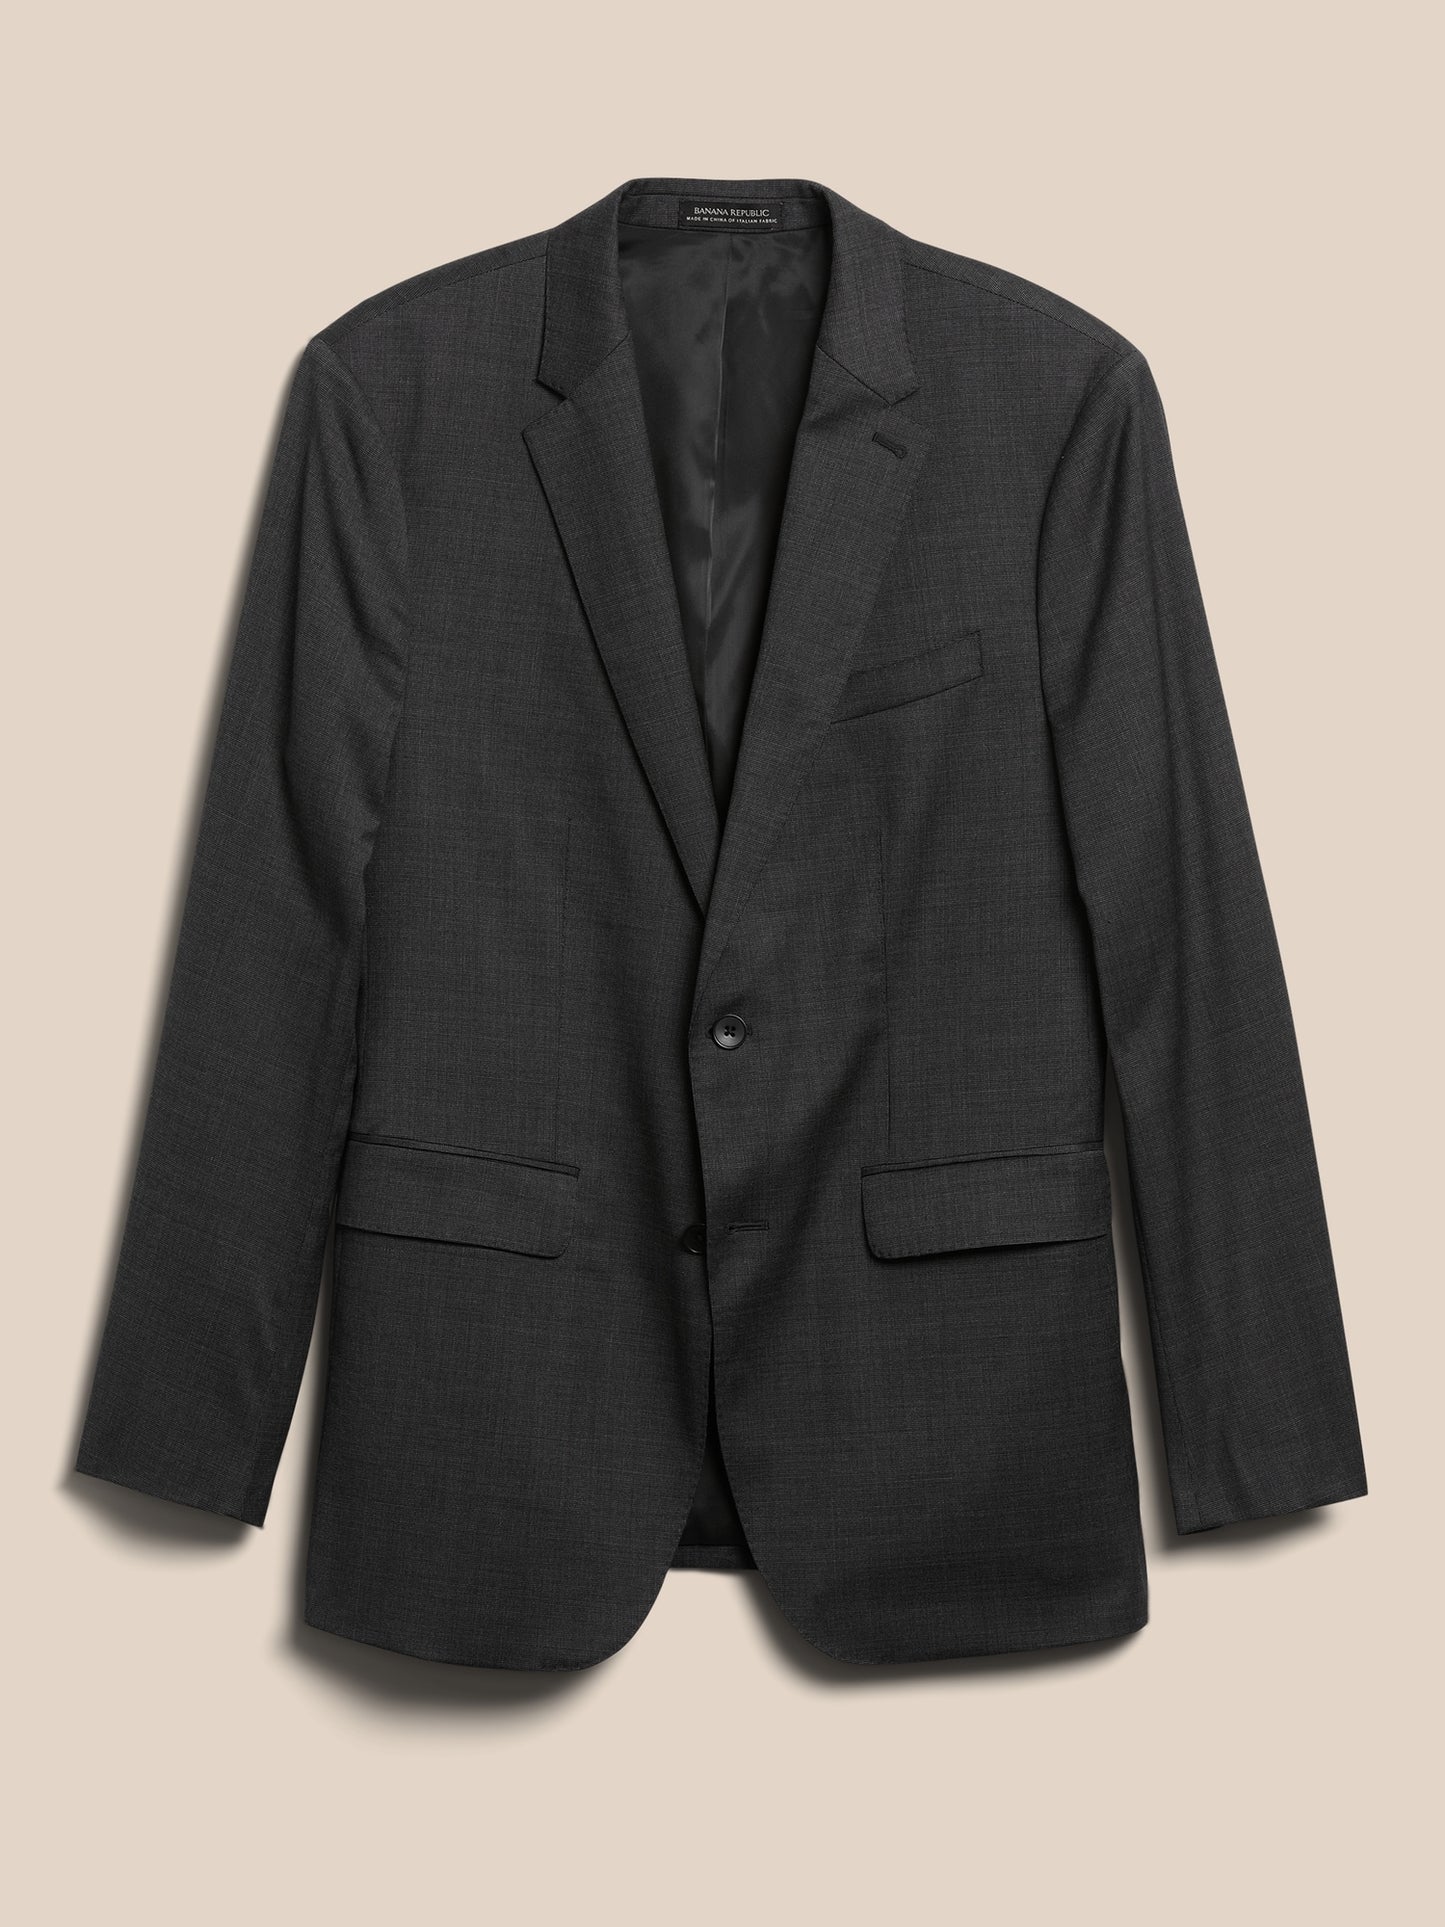 Signature Italian Nailhead Suit Jacket